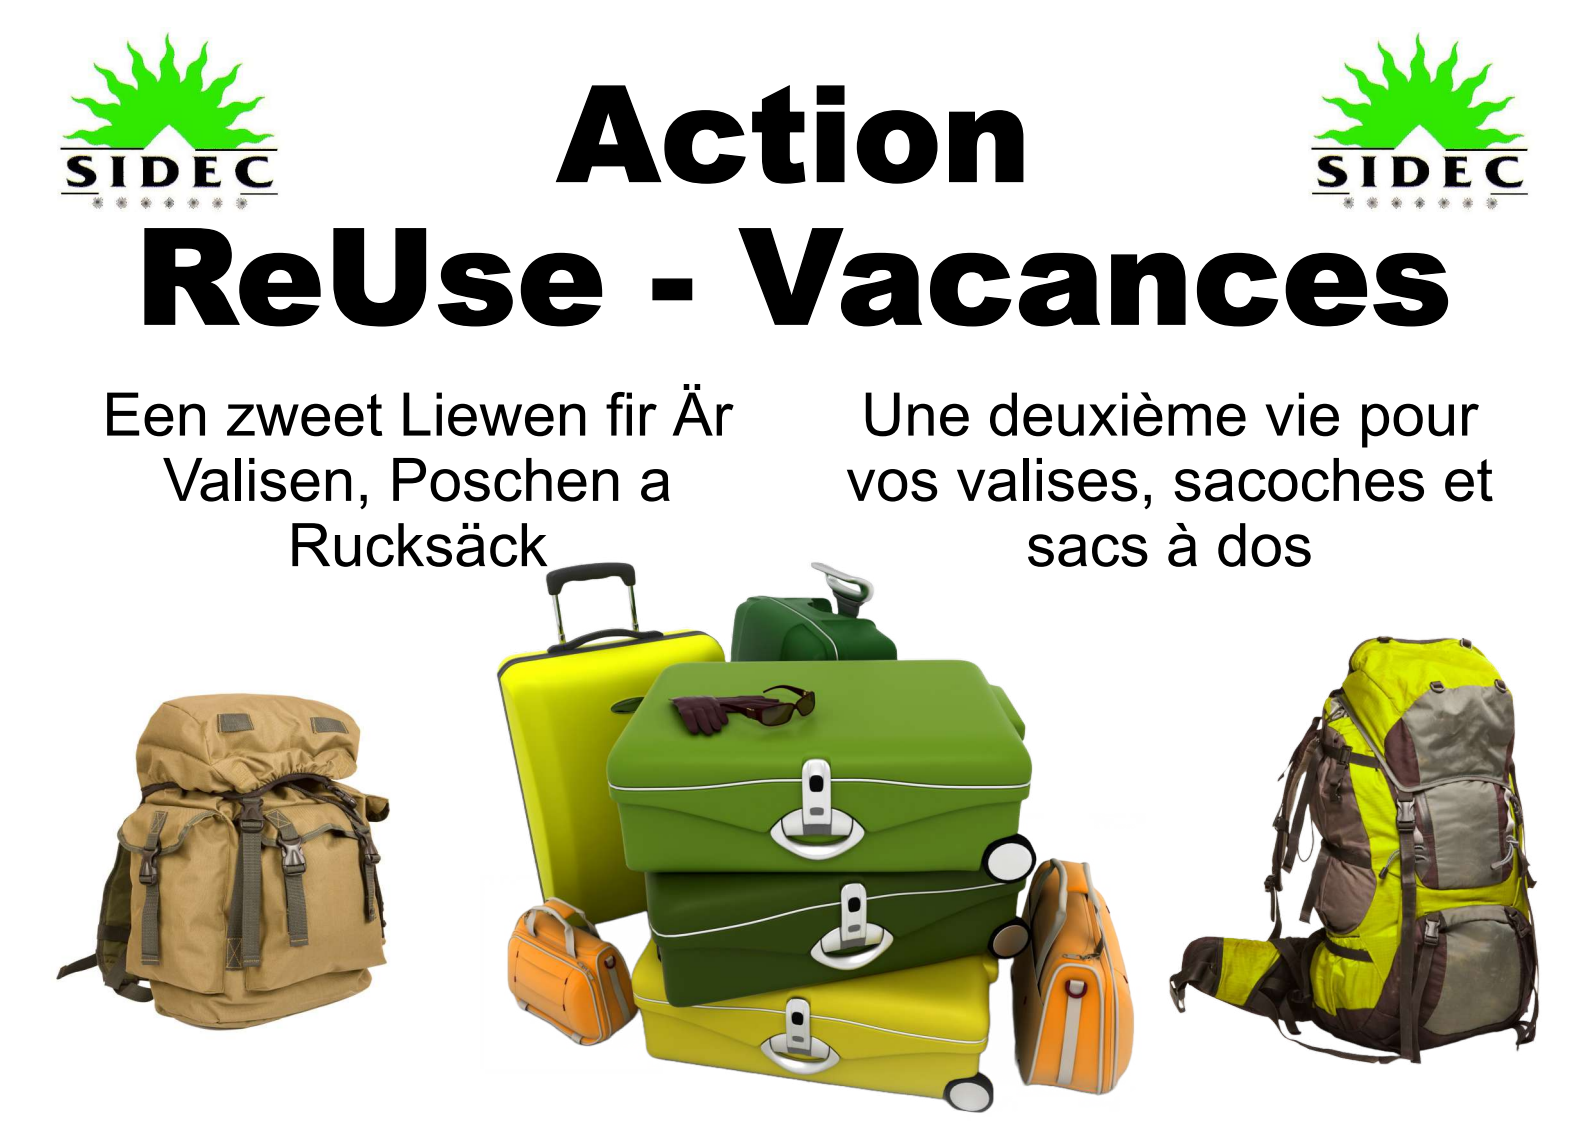 Action ReUse - Vacances